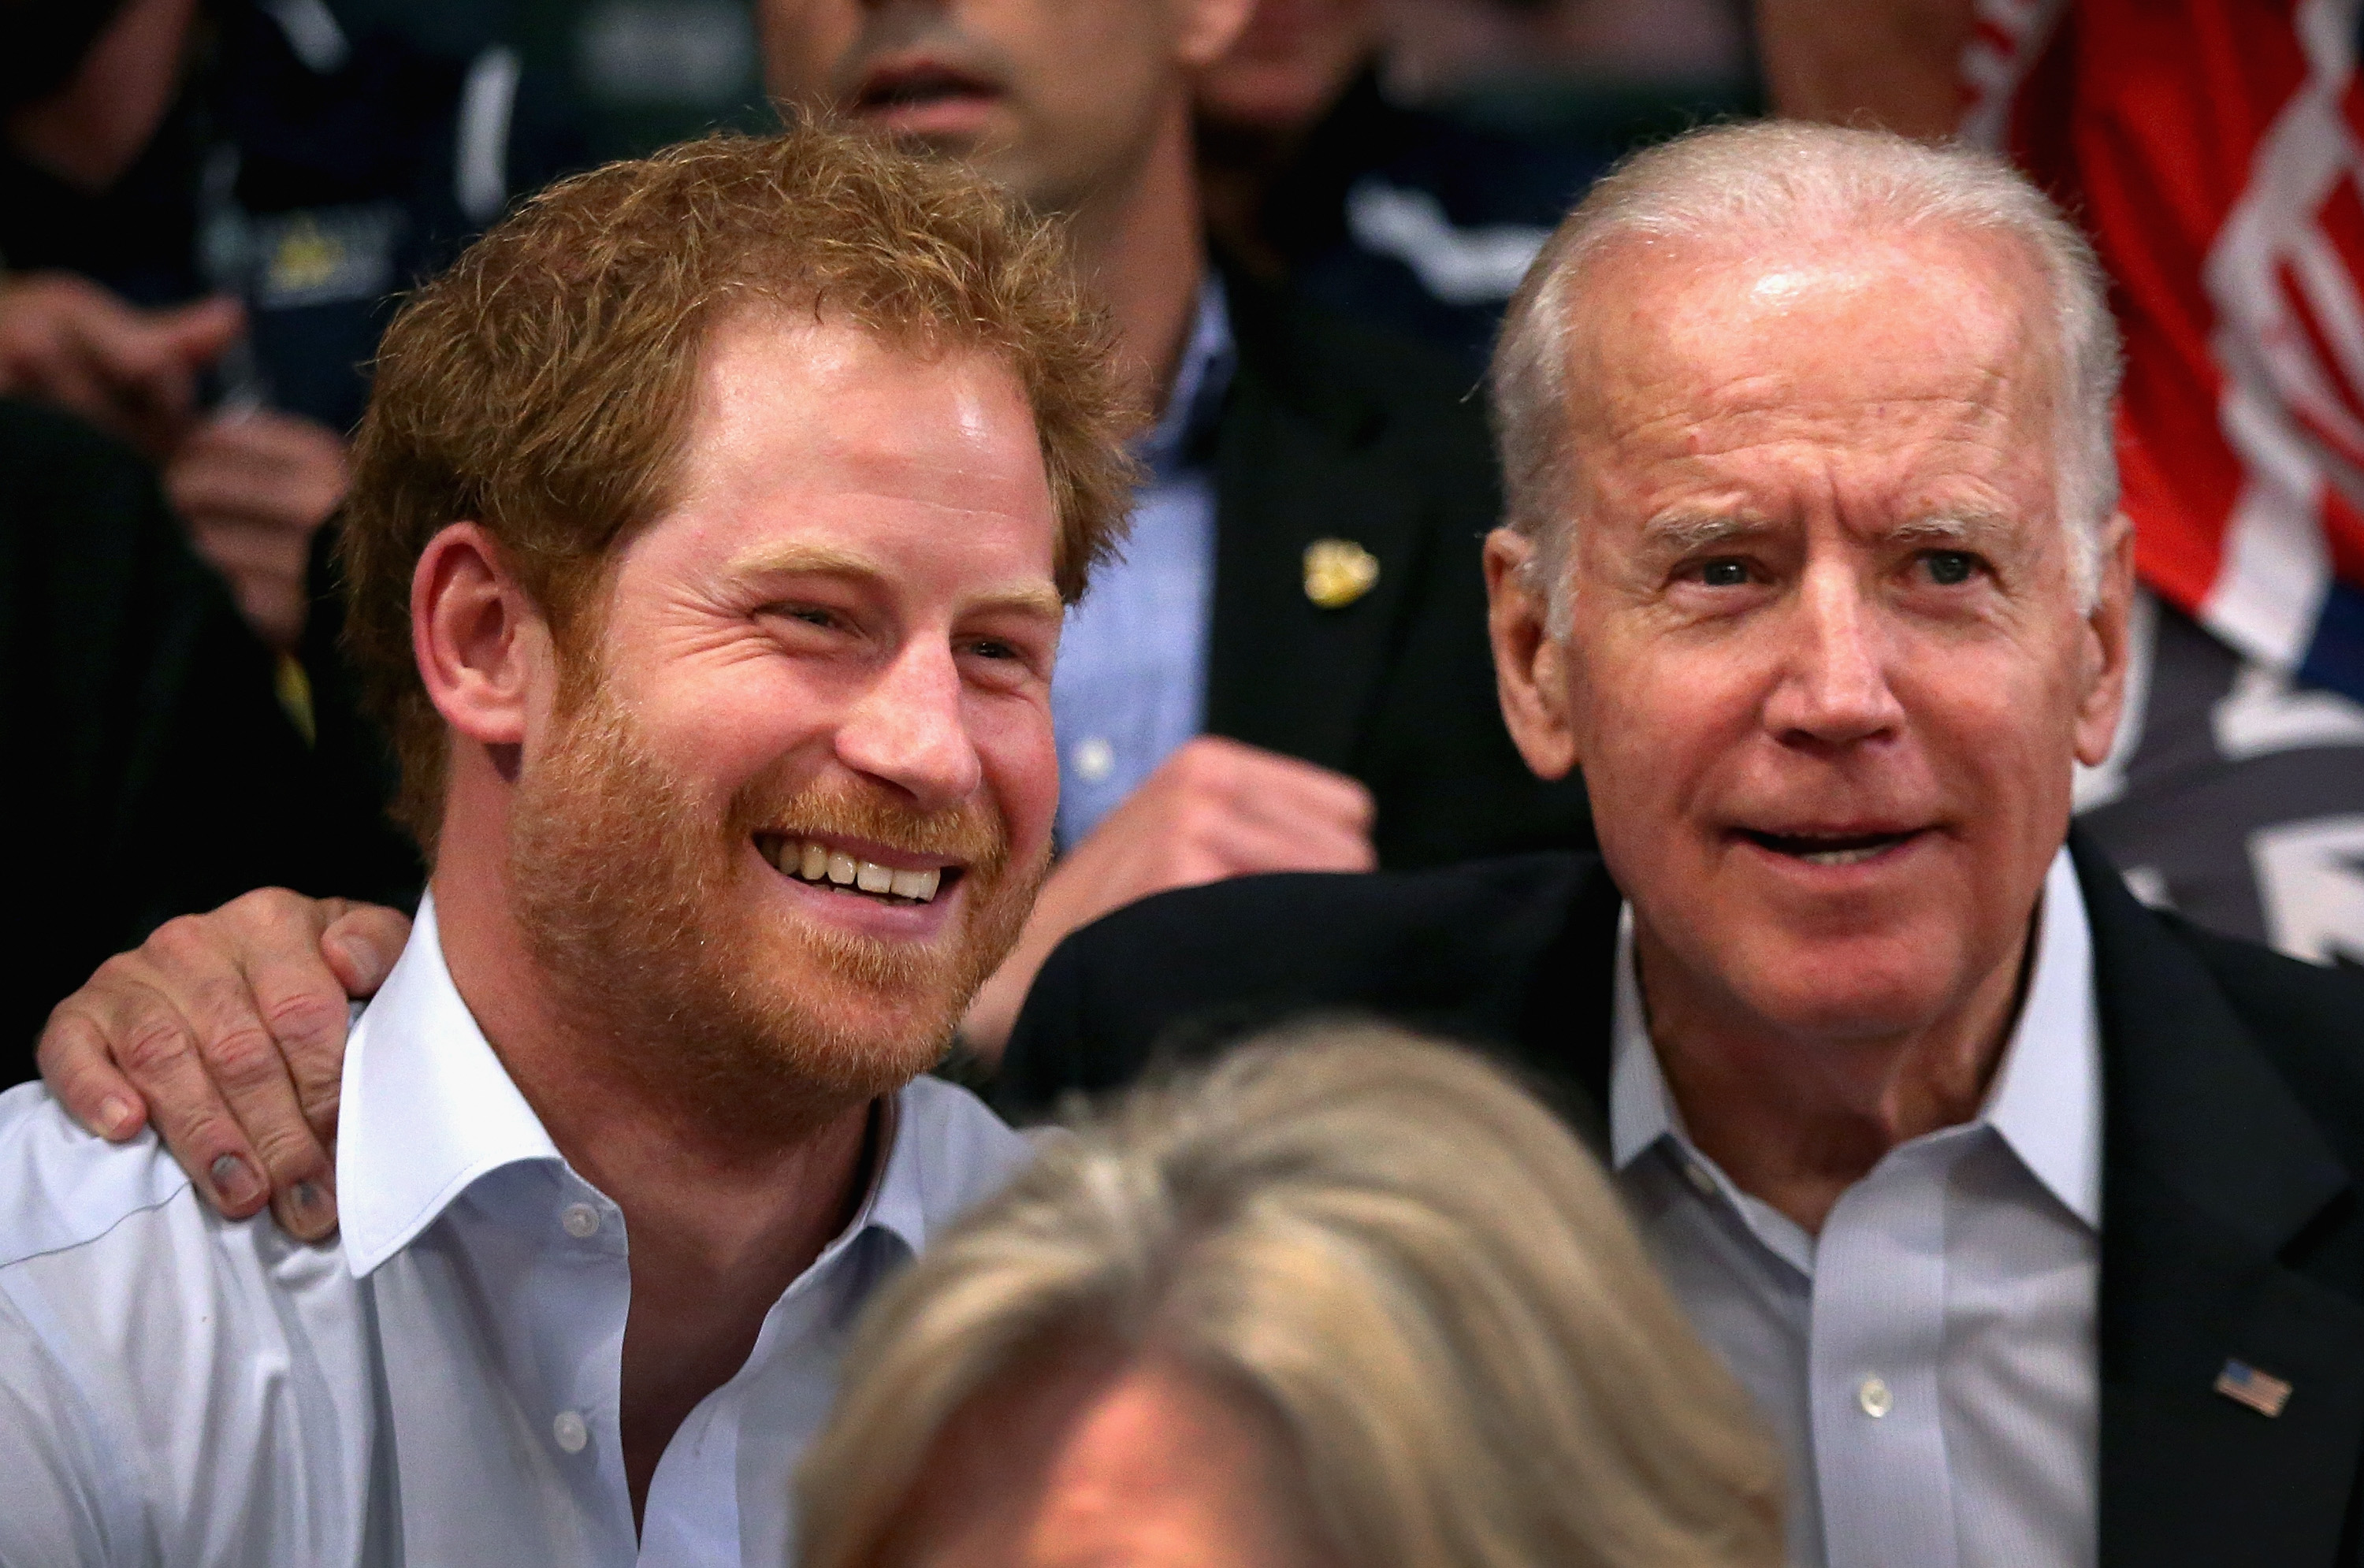 El príncipe Harry y el presidente de los Estados Unidos Joe Biden en los Juegos Invictus en Orlando, Florida, el 11 de mayo de 2016 | Fuente: Getty Images